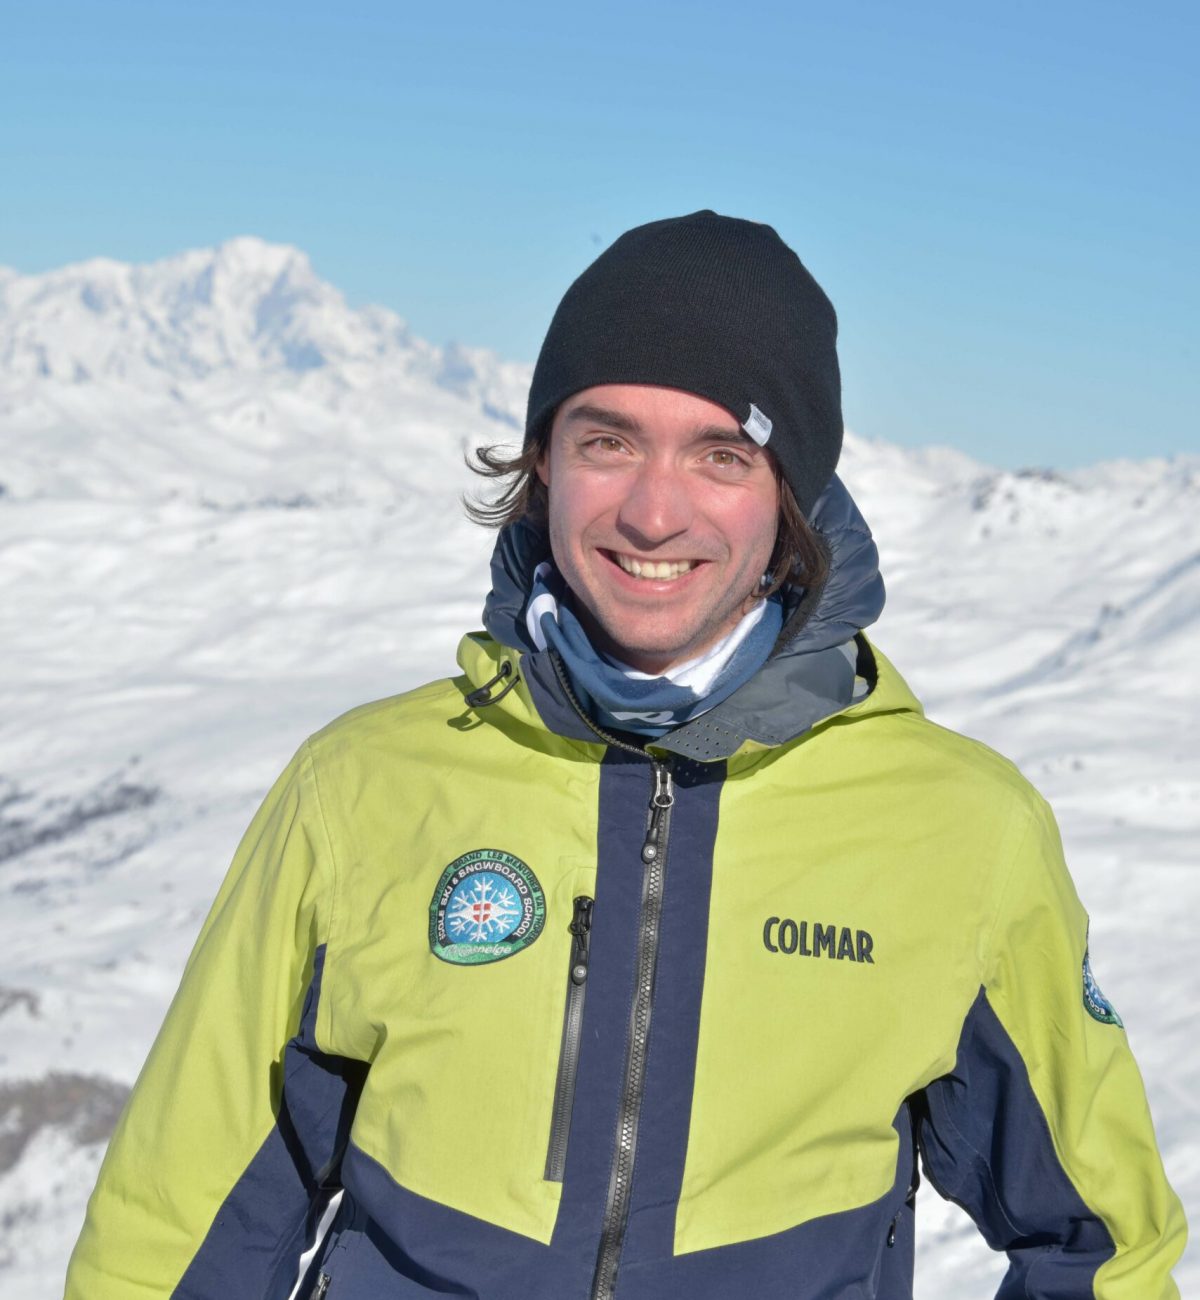 Alexis-moniteur-ski-prosneige